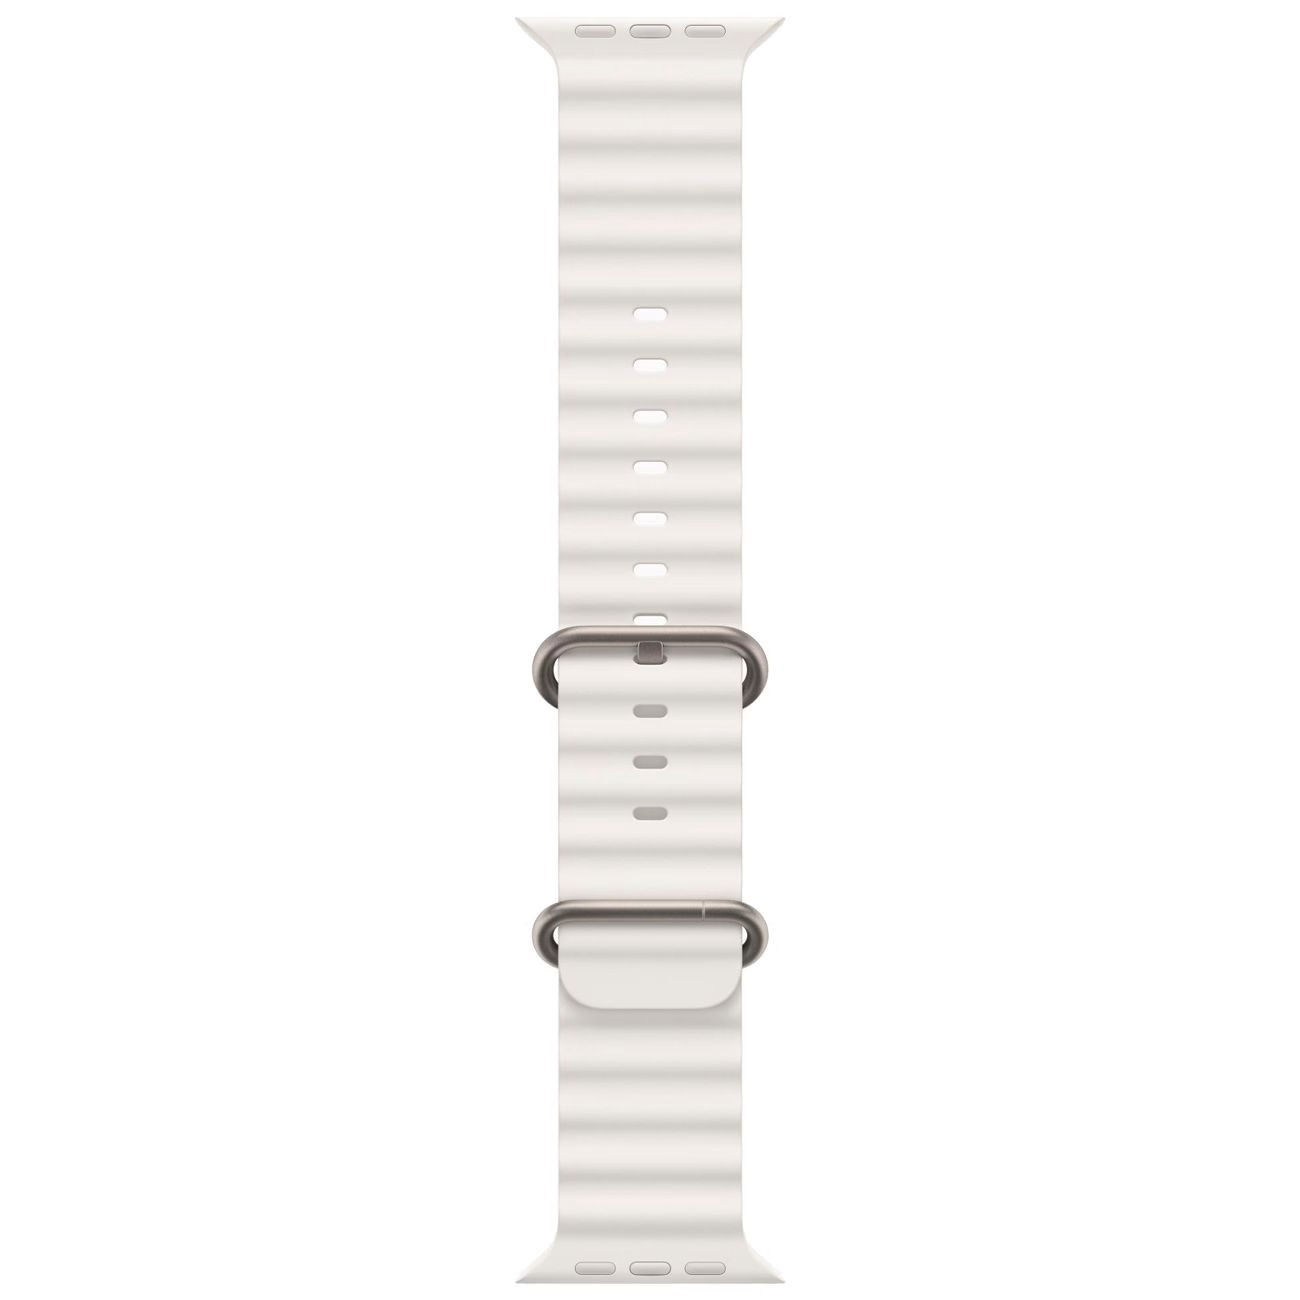 Купить смарт-часы apple watch ultra 2 ocean band white Apple Watch Ultra 2 в официальном магазине Apple, Samsung, Xiaomi. iPixel.ru Купить, заказ, кредит, рассрочка, отзывы,  характеристики, цена,  фотографии, в подарок.